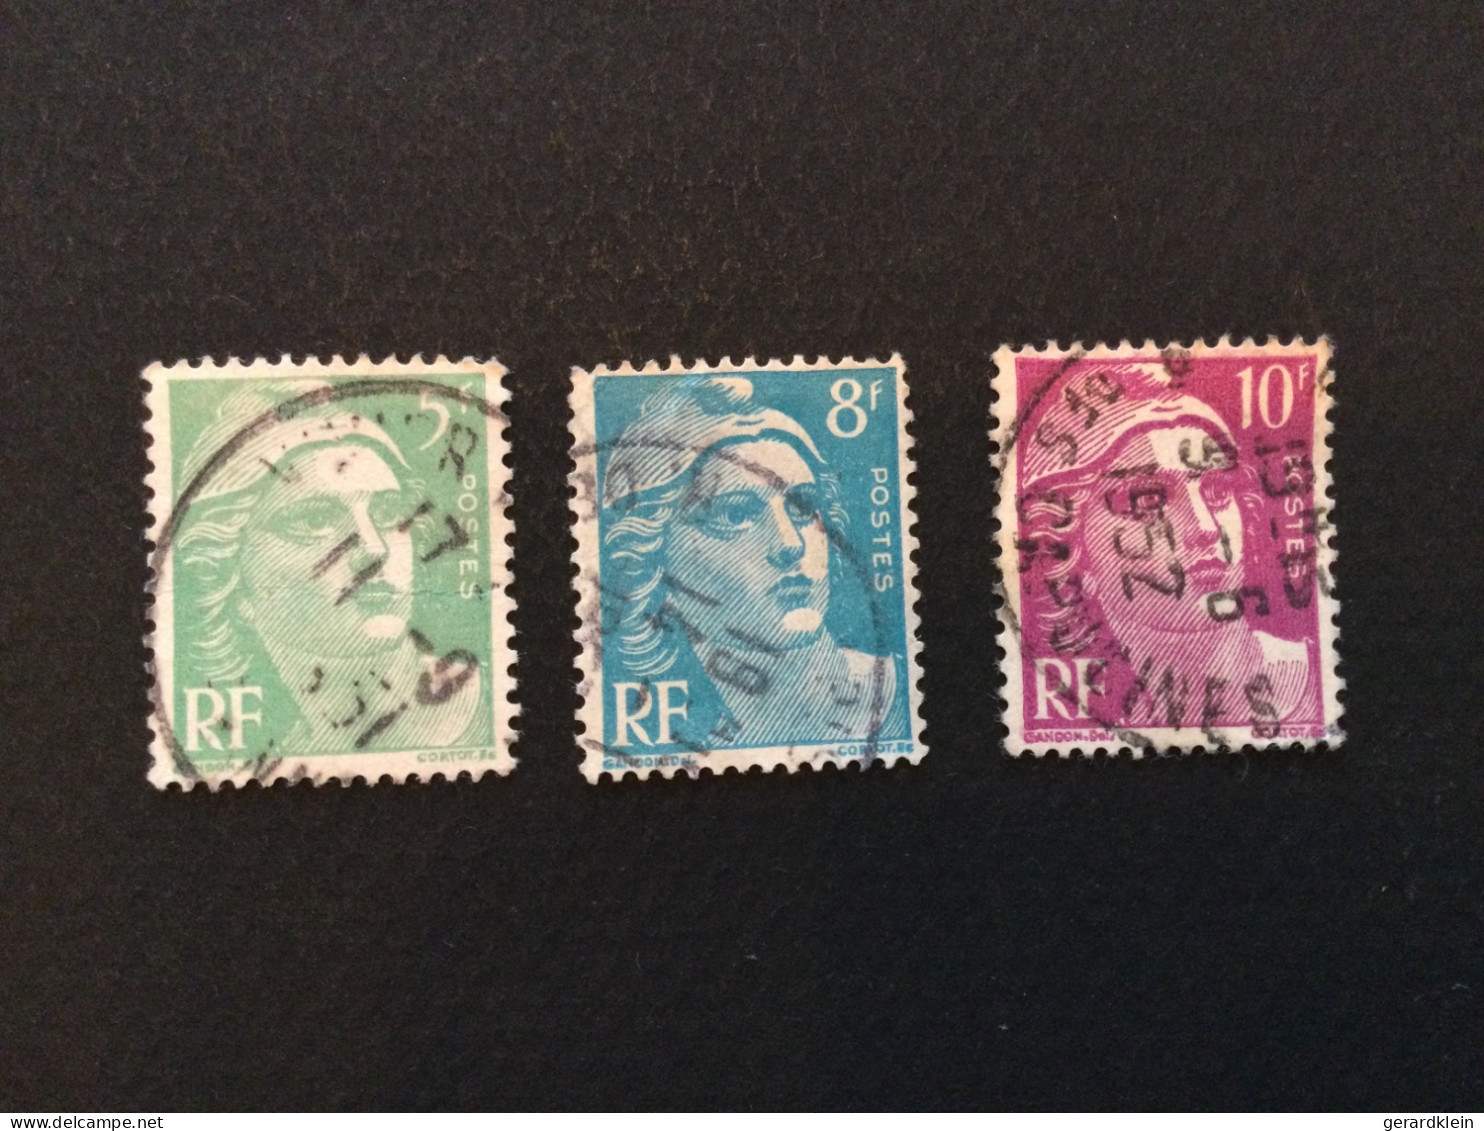 Num. 809 (5Fr)-  810 (8Fr)-811(10Fr) Type Marianne De Gandon - Used Stamps